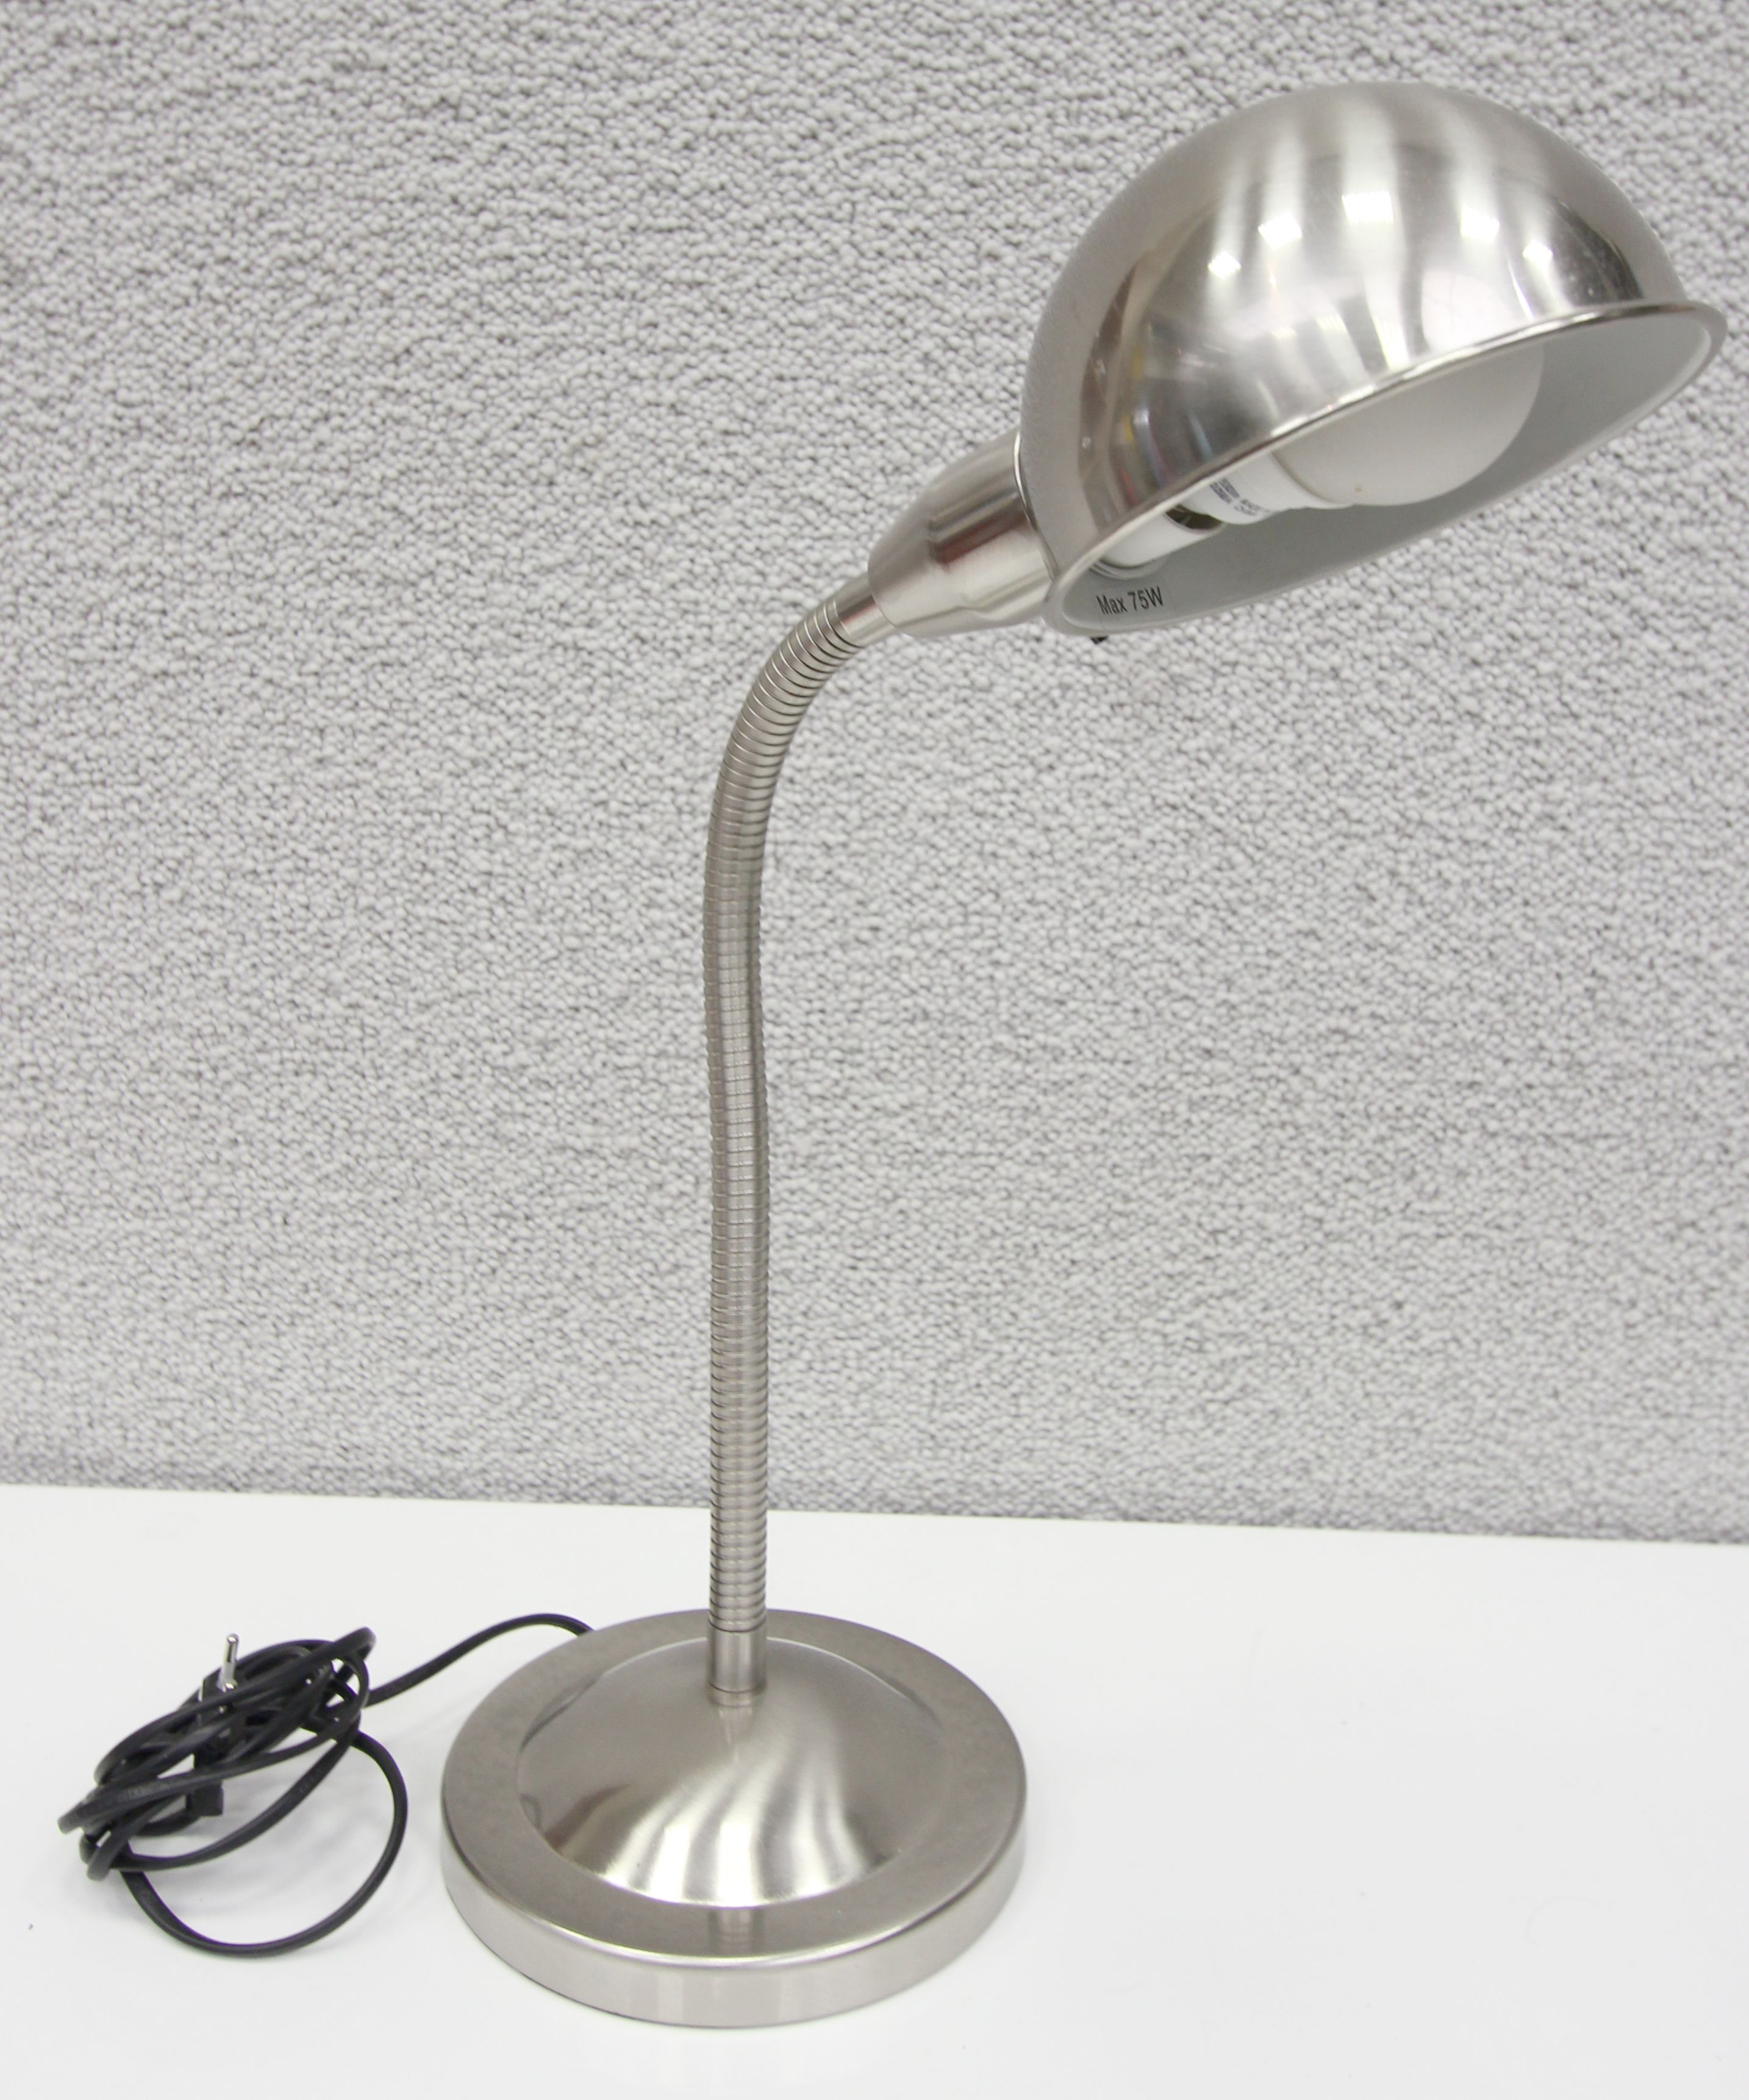 LOT 70. 1 UNITE.  LAMPE DE BUREAU A BRAS ARTICULE EN METAL DE MARQUE IKEA MODELE A0301.